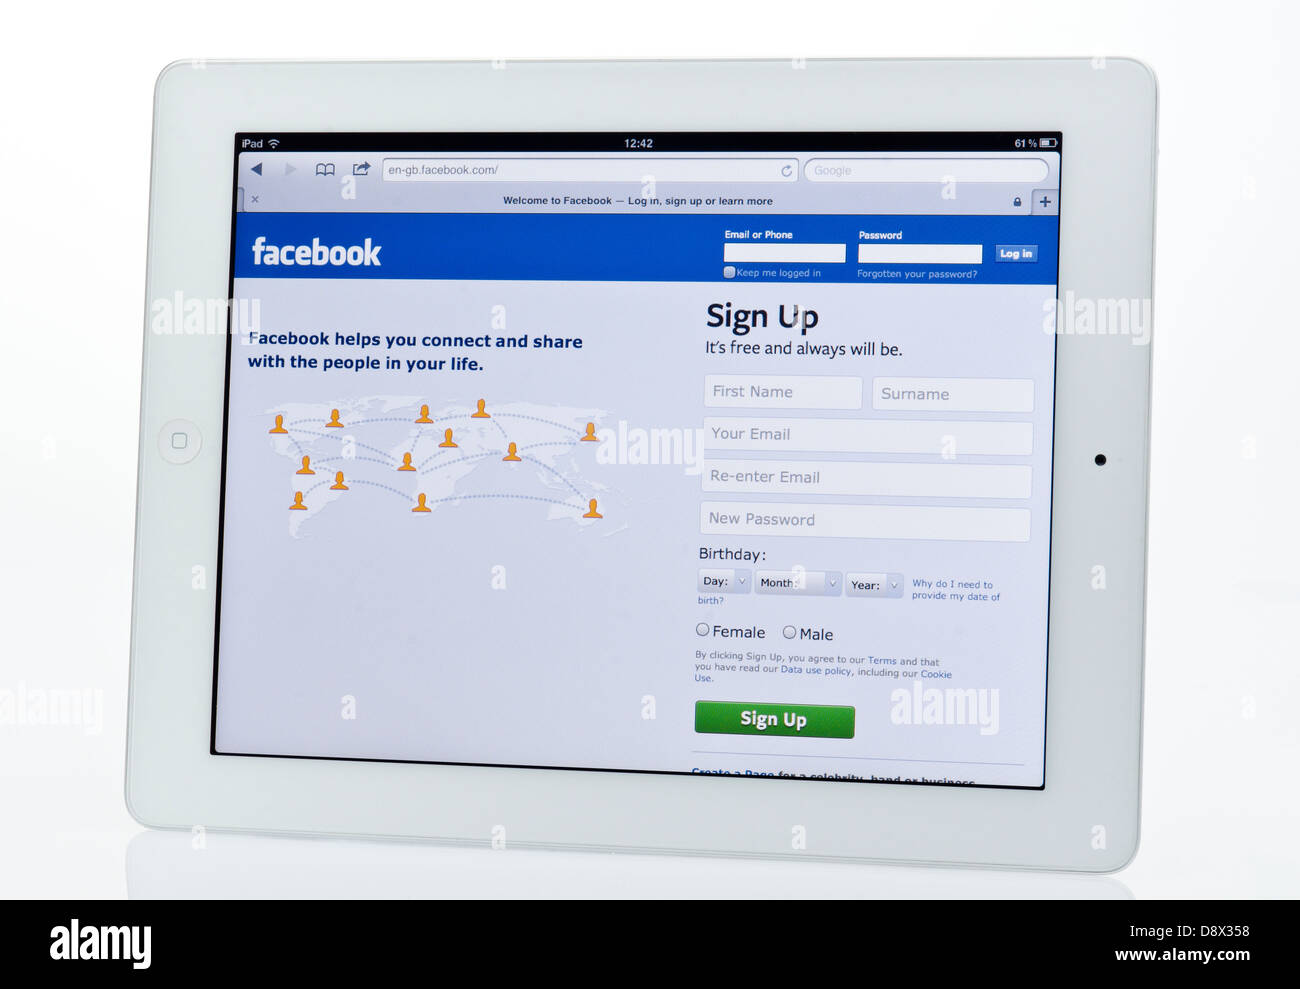 Apple Ipad zeigt Facebook-Social-Networking-Website. Stockfoto